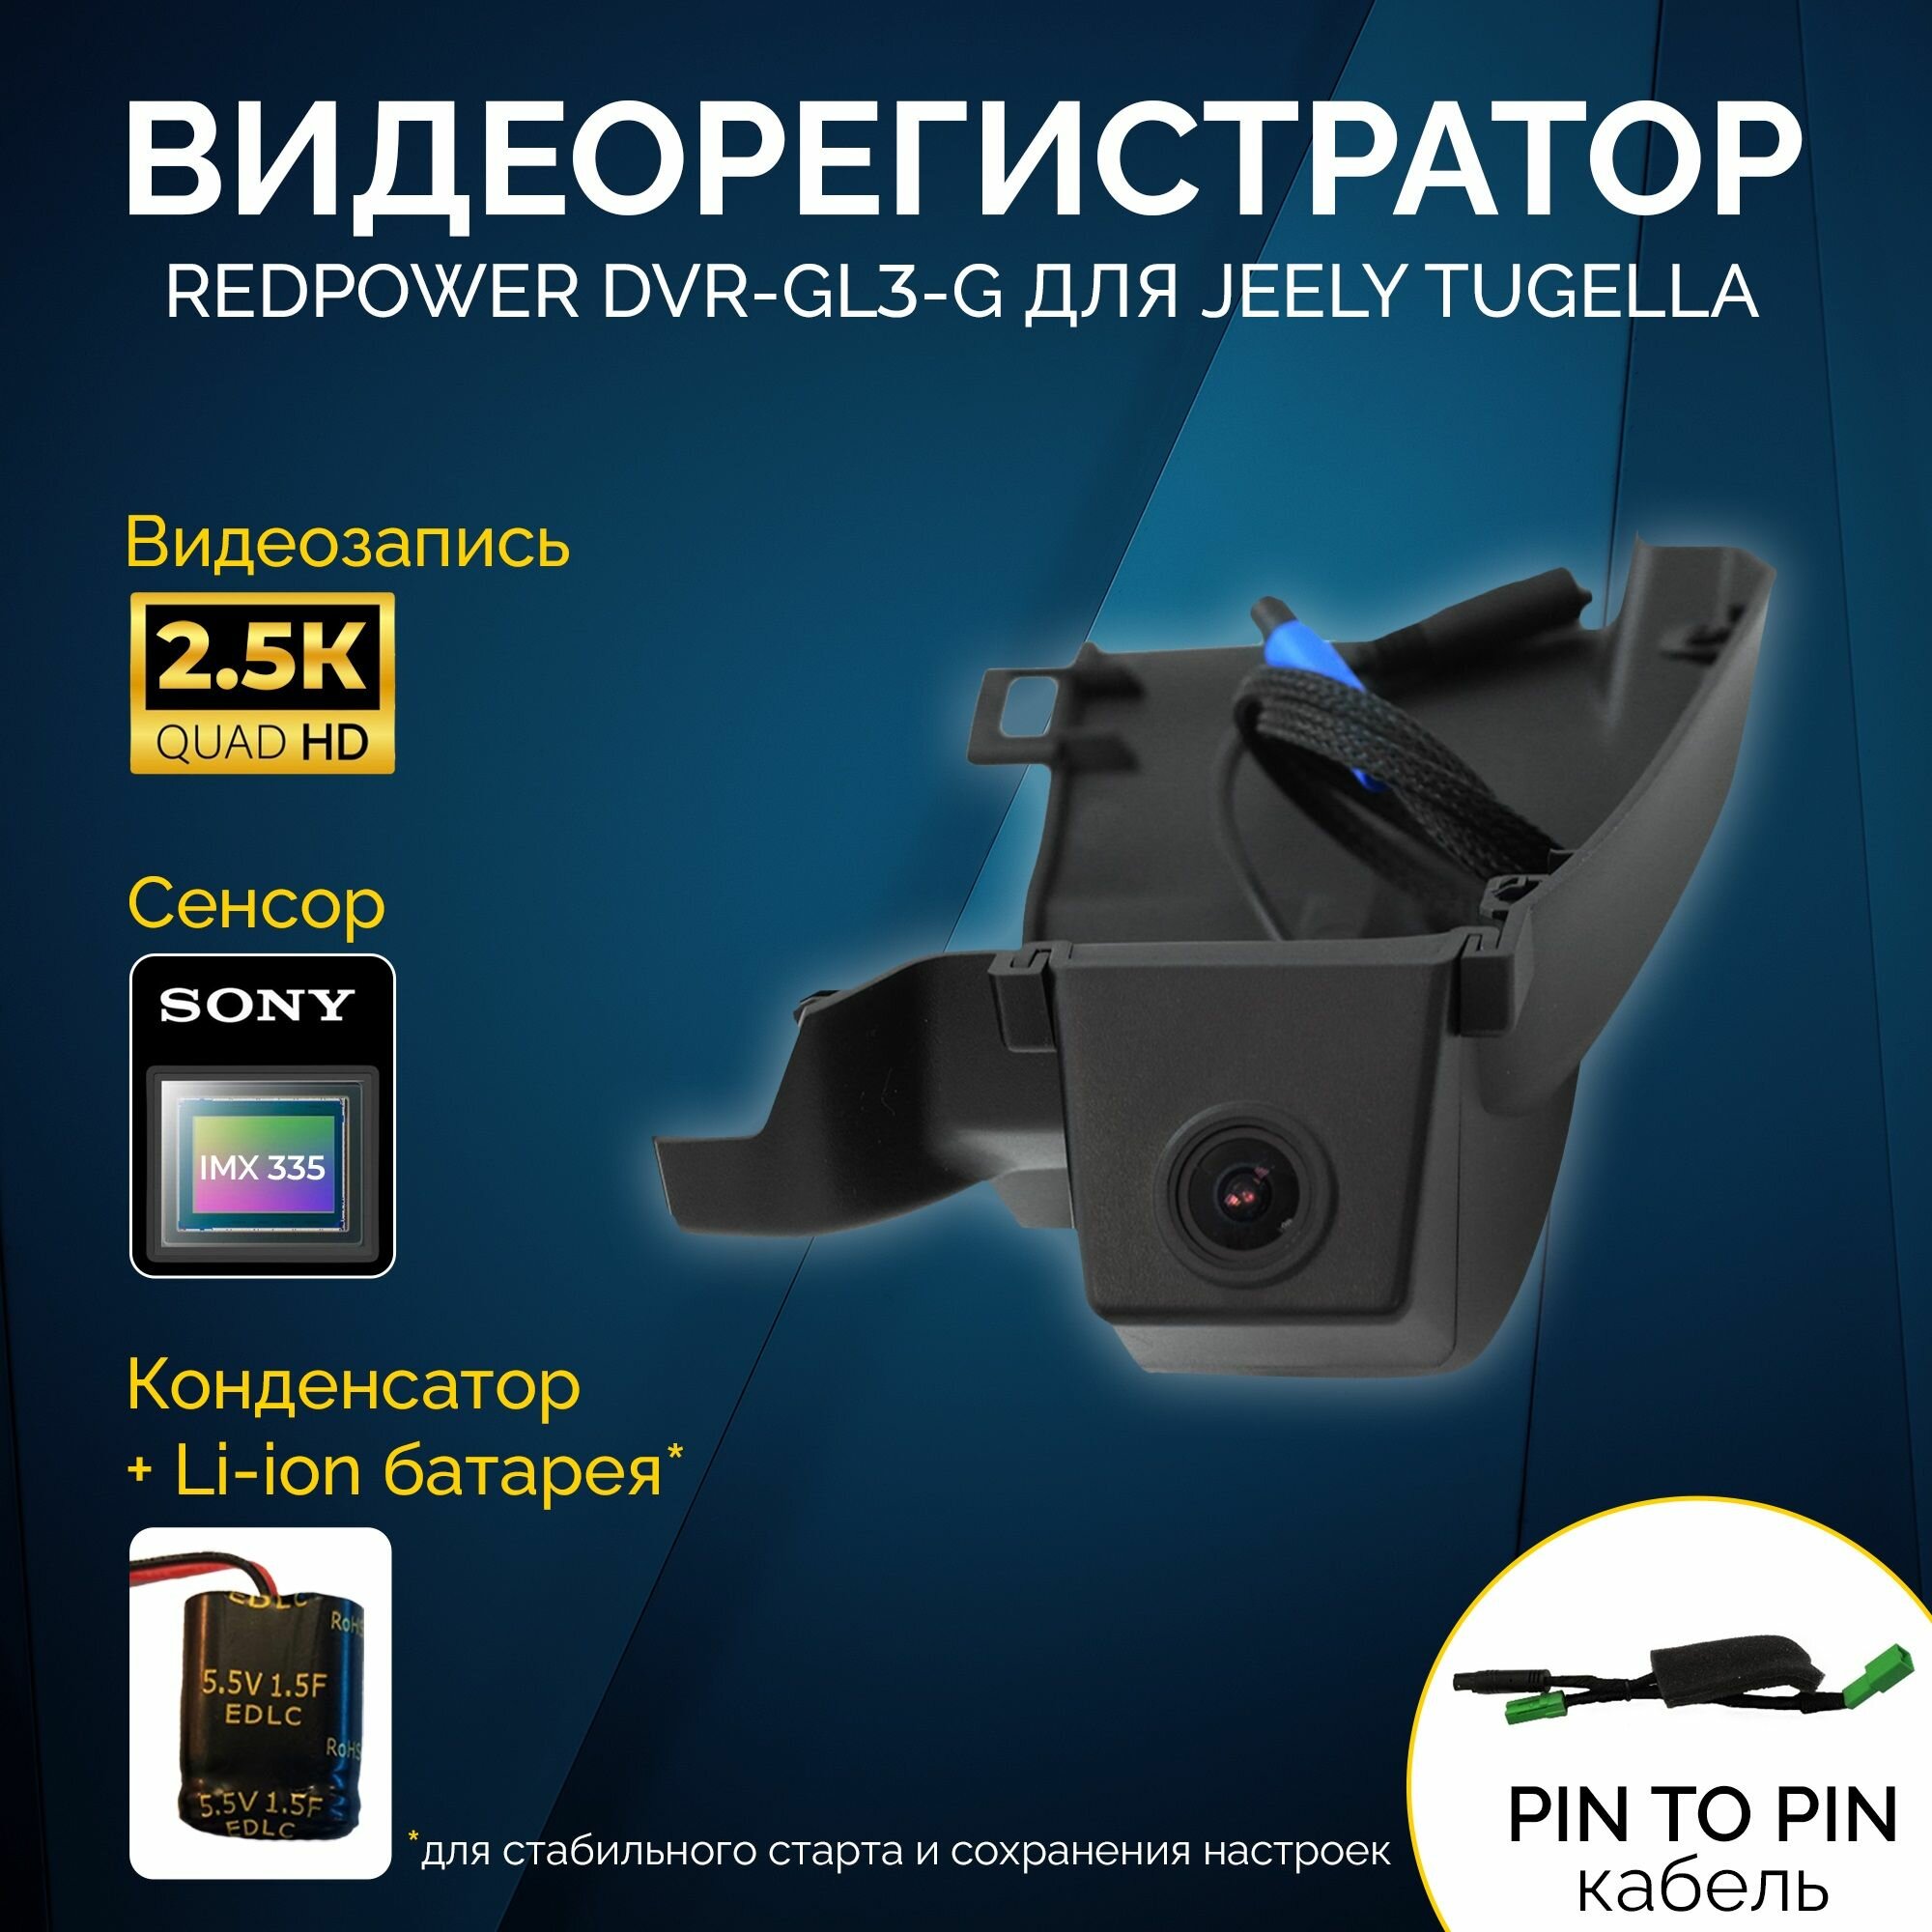 Штатный видеорегистратор Redpower DVR-GL3-G для Jeely Tugella